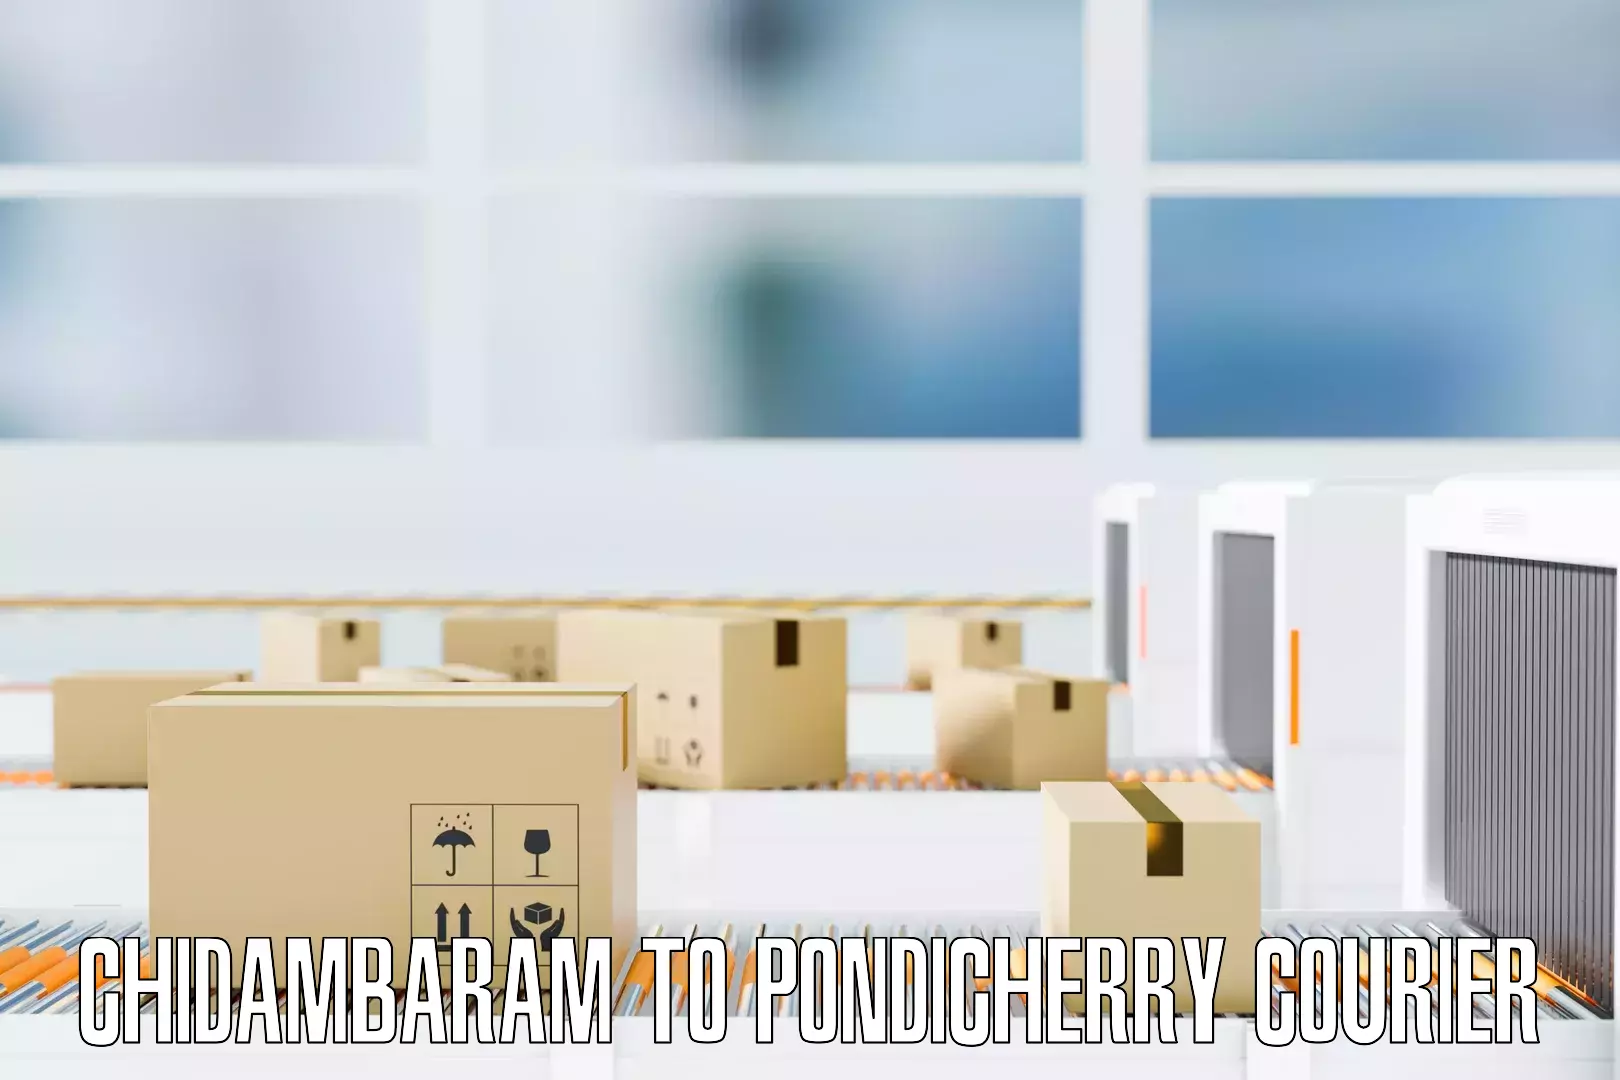 Home goods moving company Chidambaram to Pondicherry